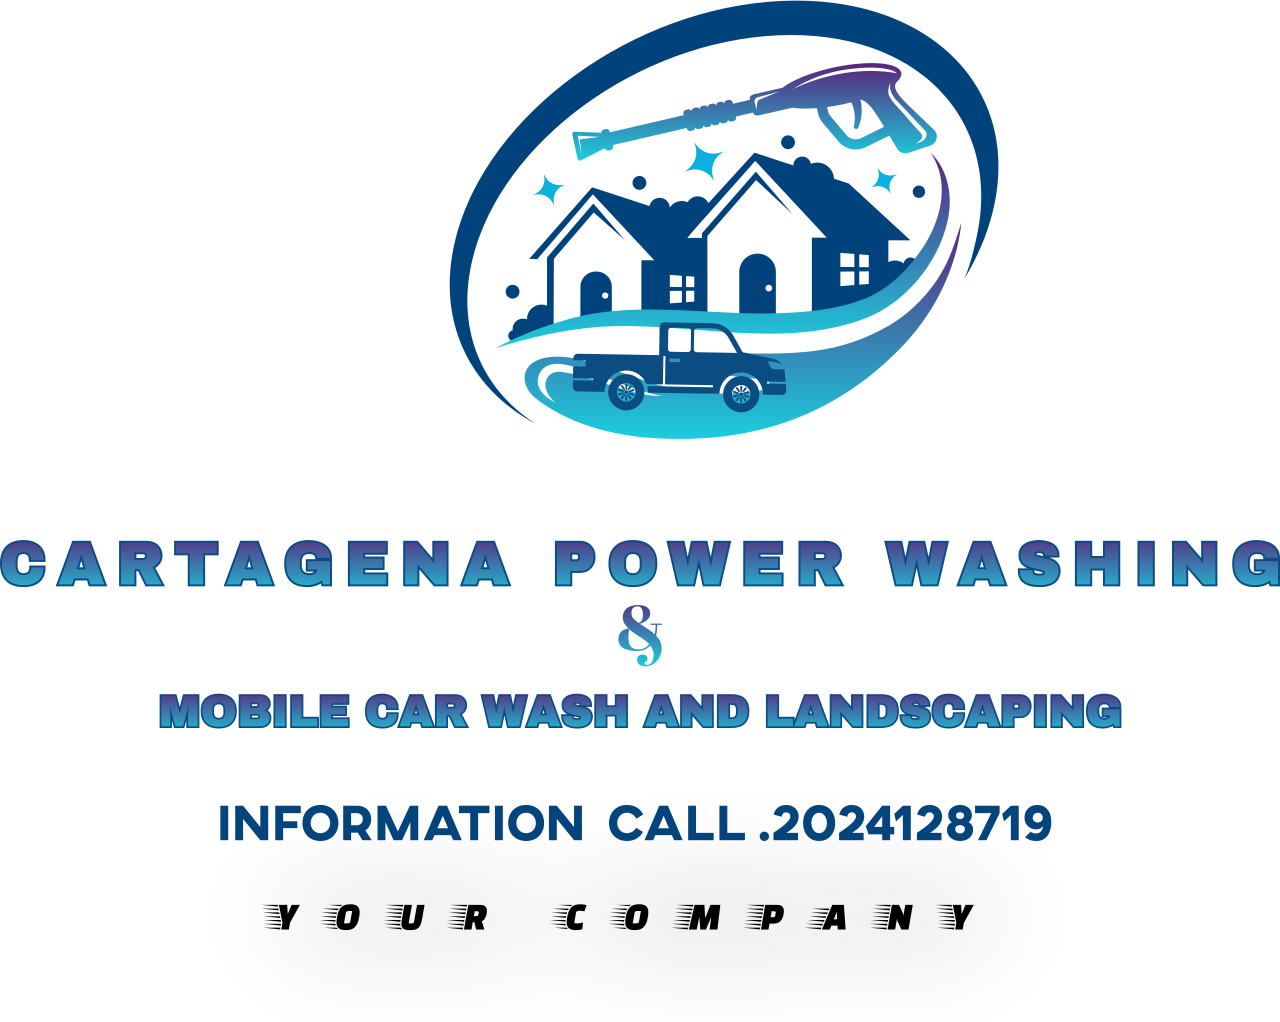 CARTAGENA POWER WASHING's logo